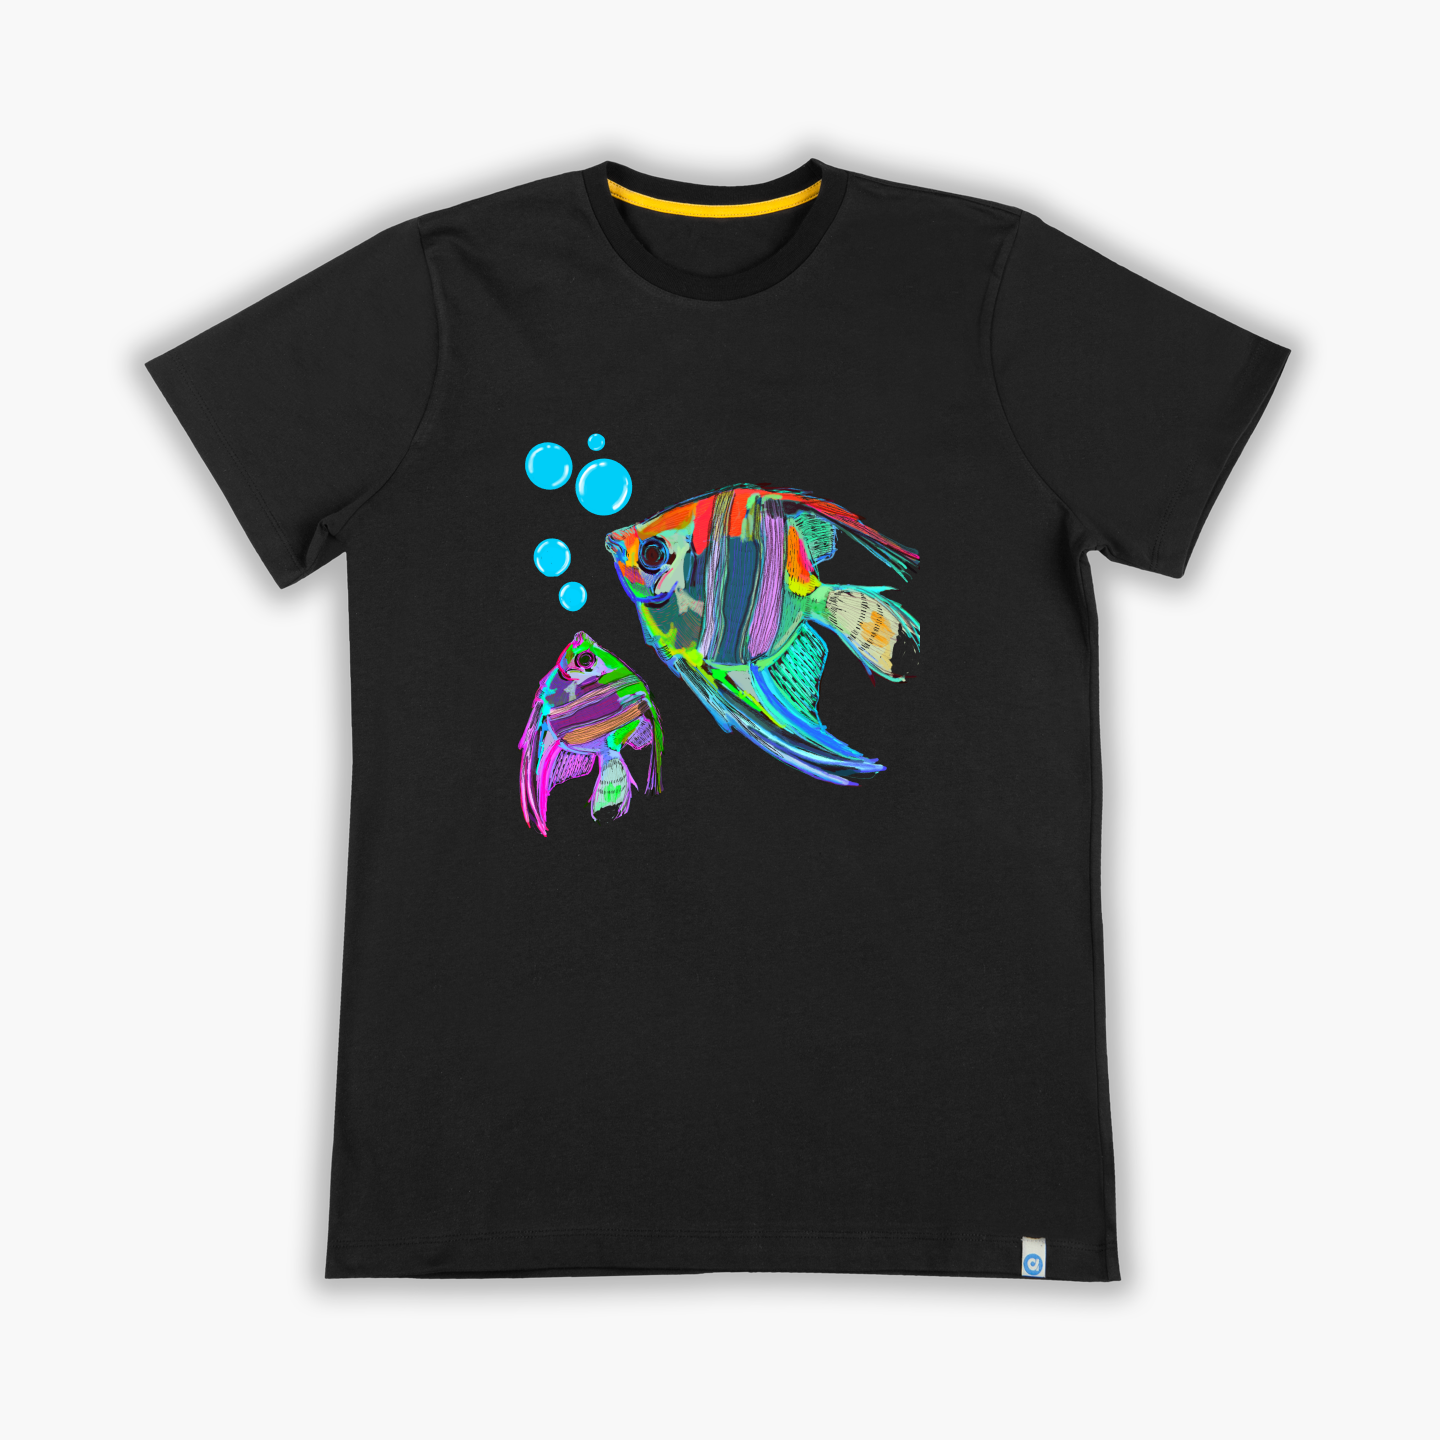 Melek balığı - Tişört